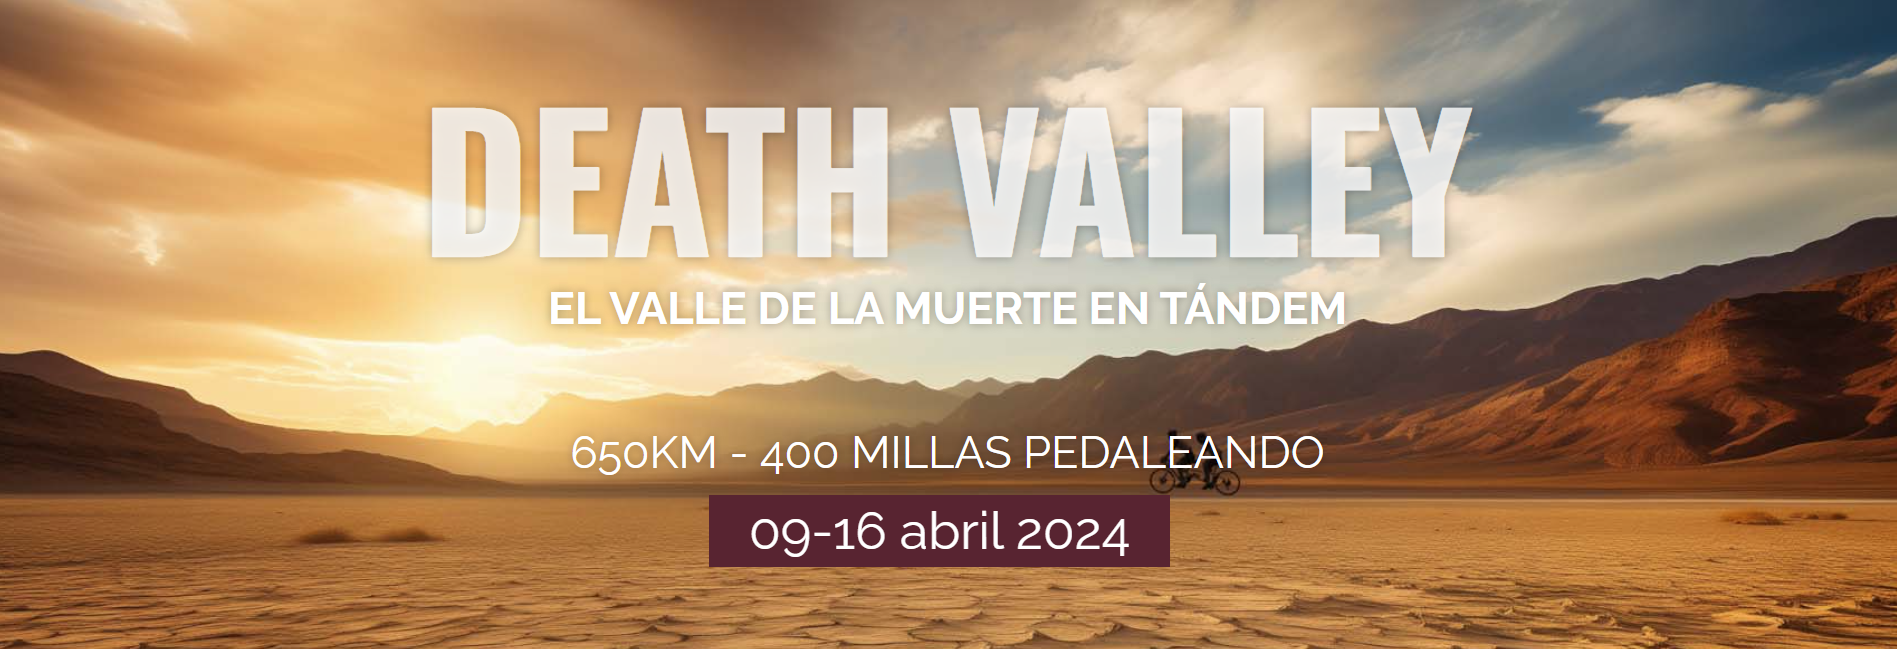 Jaime Lafita y Dalecandela desafan el Valle de la Muerte, consigamos pedalear 6.500 km entre todos! - 